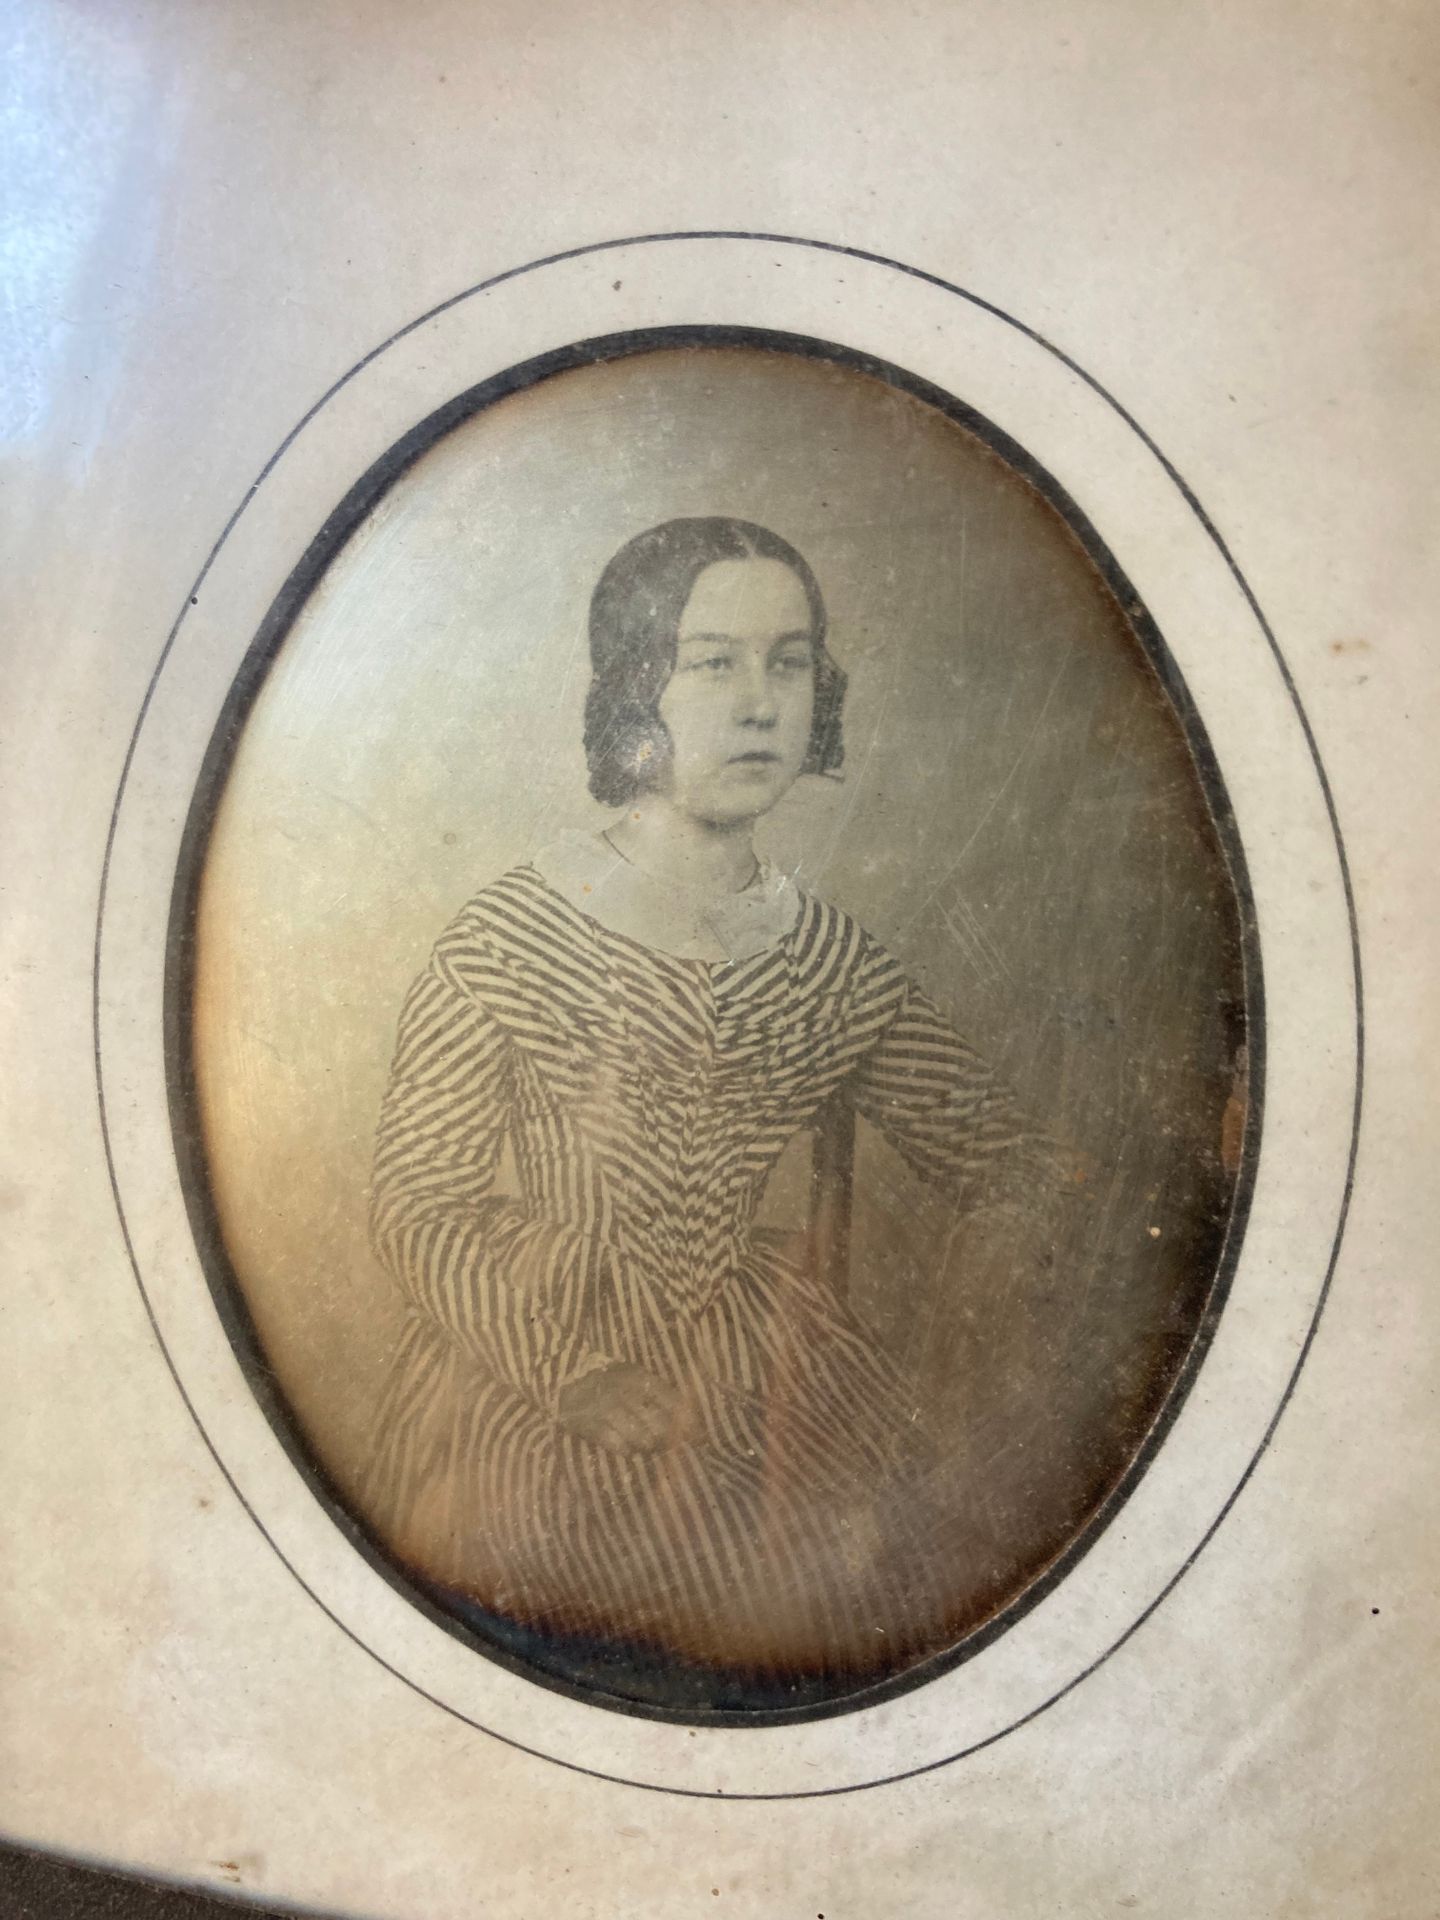 DAGUERREOTYPE Daguerreotype，19世纪。

坐着的女人穿着条纹的衣服。

过去的对比。

10.9 x 8.2 cm 椭圆形，正在展出